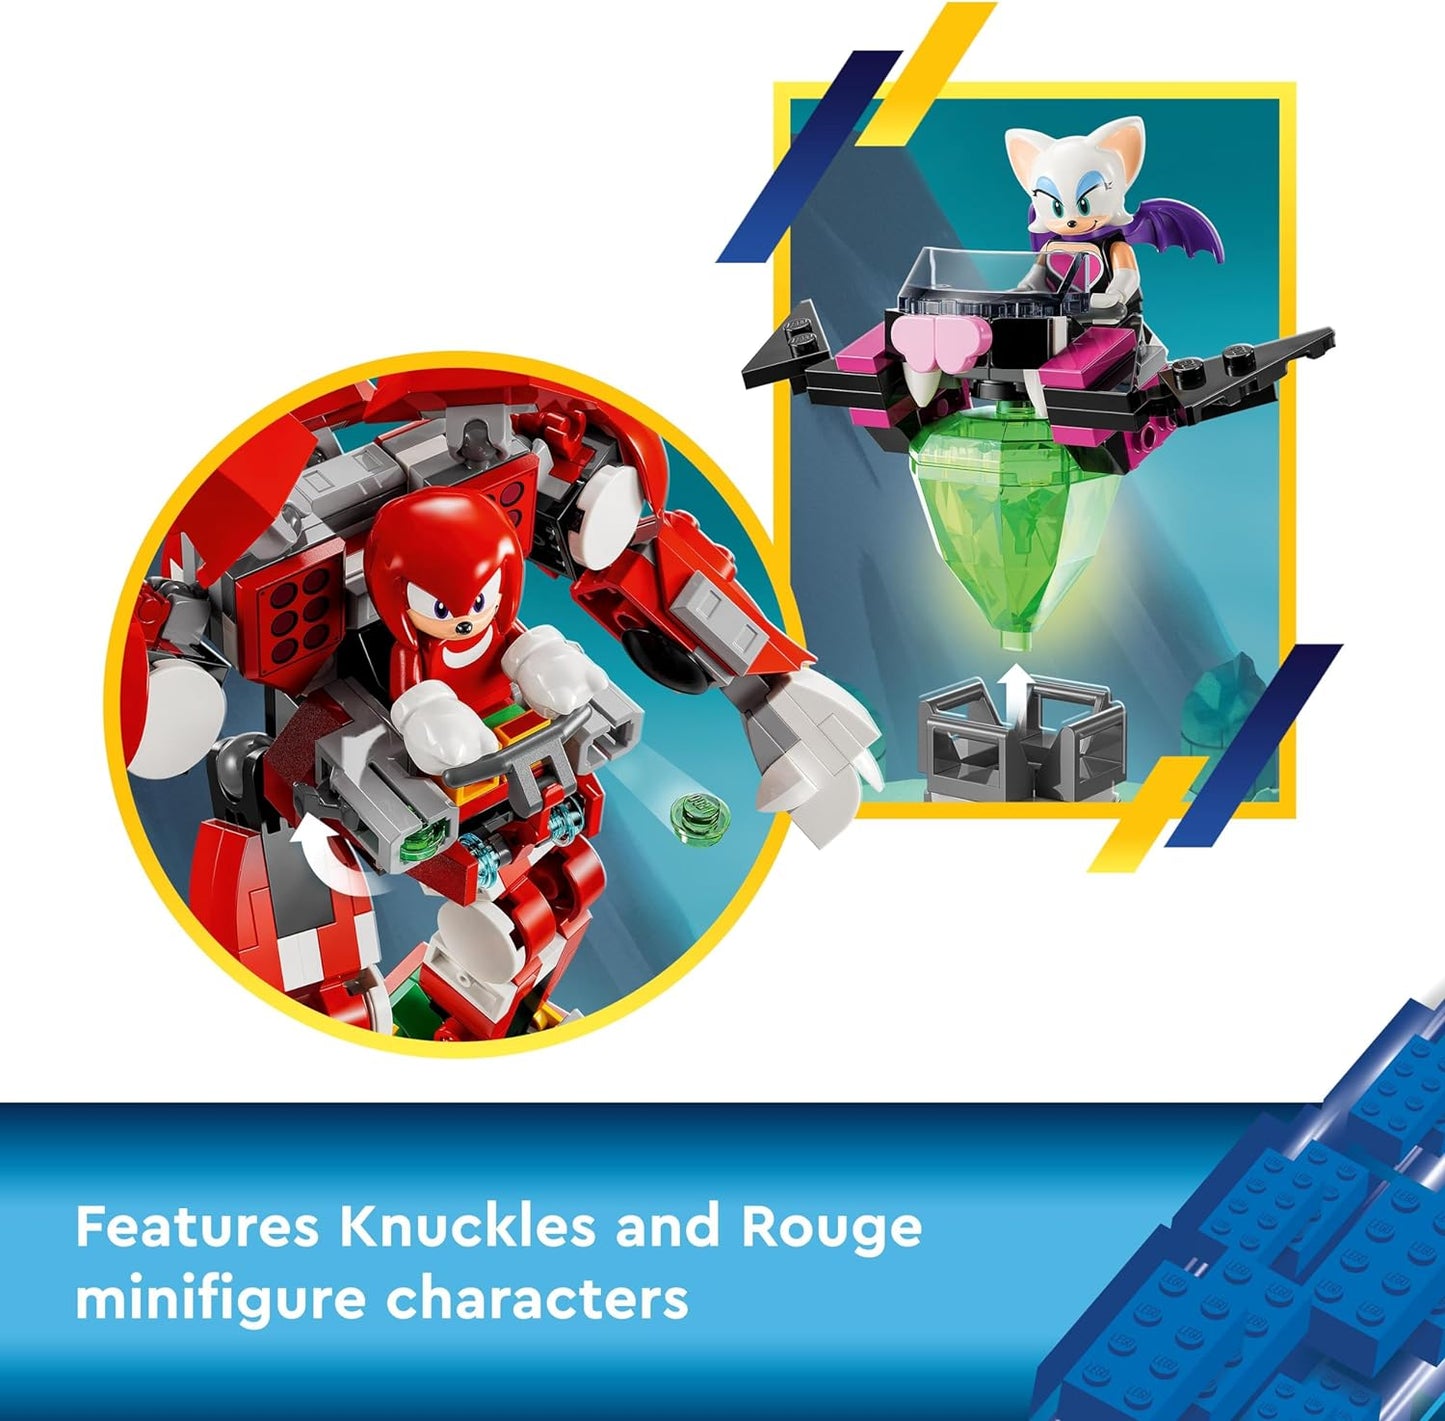 LEGO Sonic the Hedgehog Knuckles’ Guardian Mech, brinquedo de bonecos de ação para crianças, meninos e meninas, com figuras de personagens de videogame, incluindo. Knuckles e Rouge the Bat, além de uma Master Emerald, ideia divertida para presente 76996